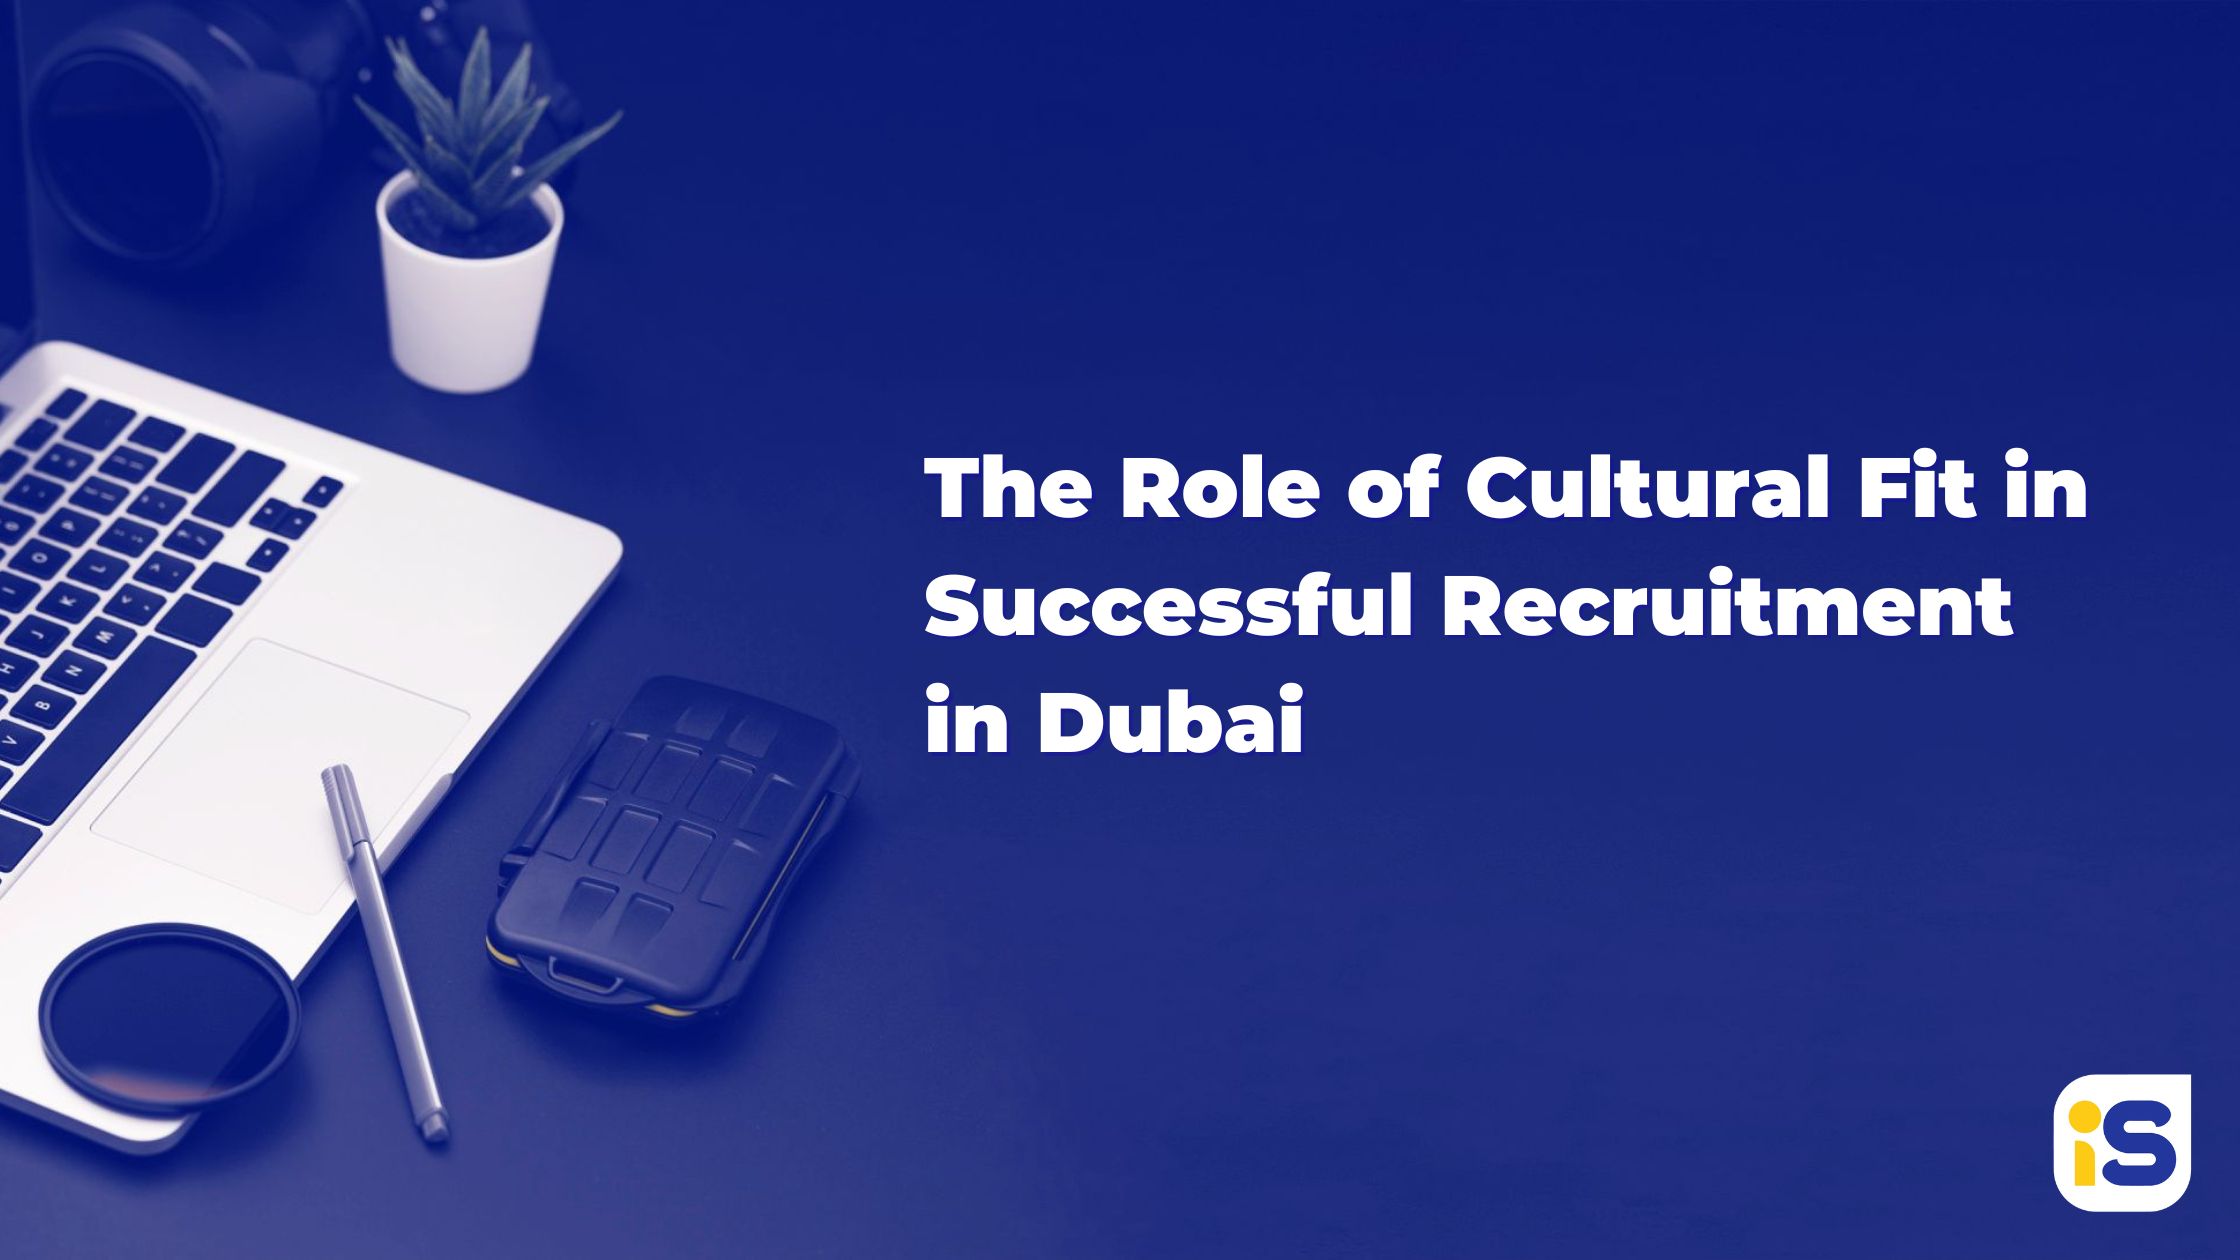 The Role of Cultural Fit in Successful Recruitment in Dubai